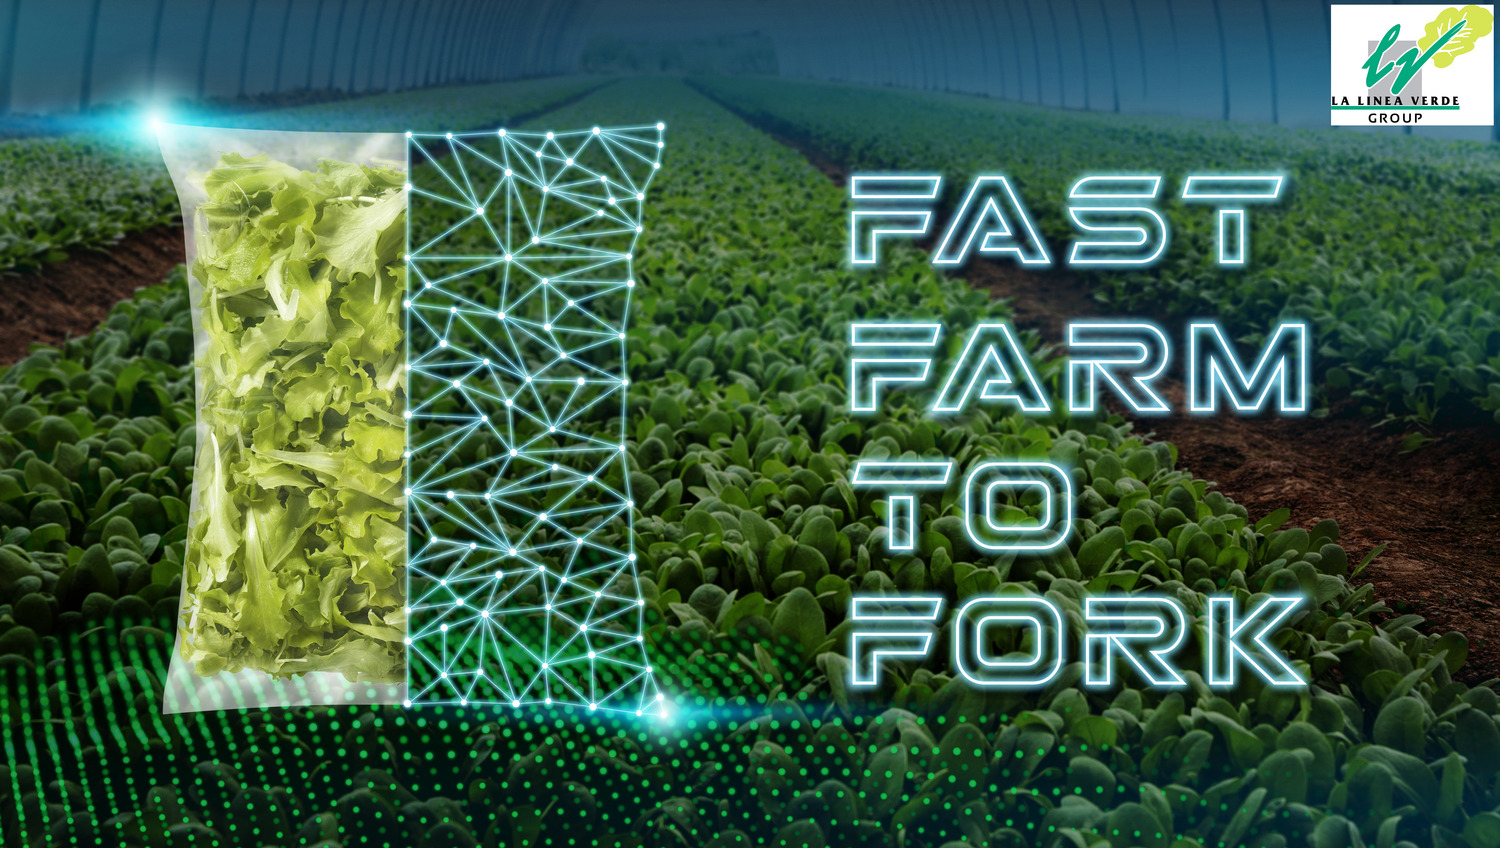 “Fast farm to fork”, tra industria 4.0 e buona agricoltura: La Linea Verde investe 25 milioni di euro in un piano triennale tecnologico